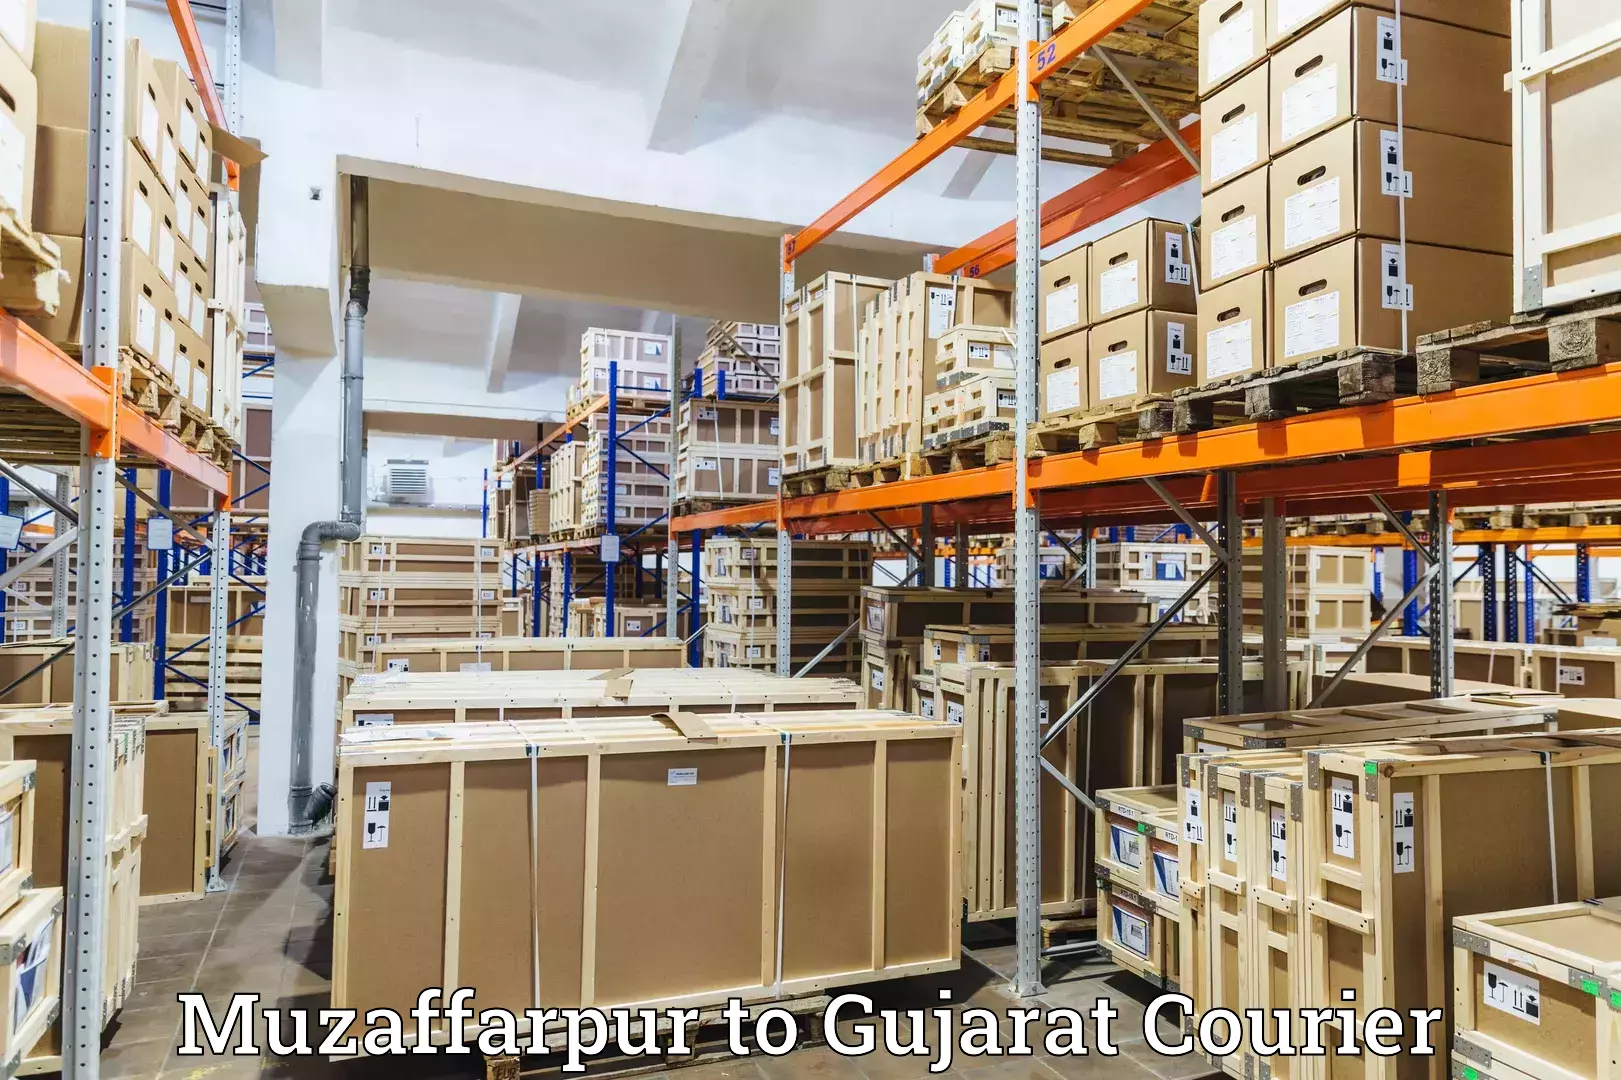 Seamless shipping service Muzaffarpur to Dayapar